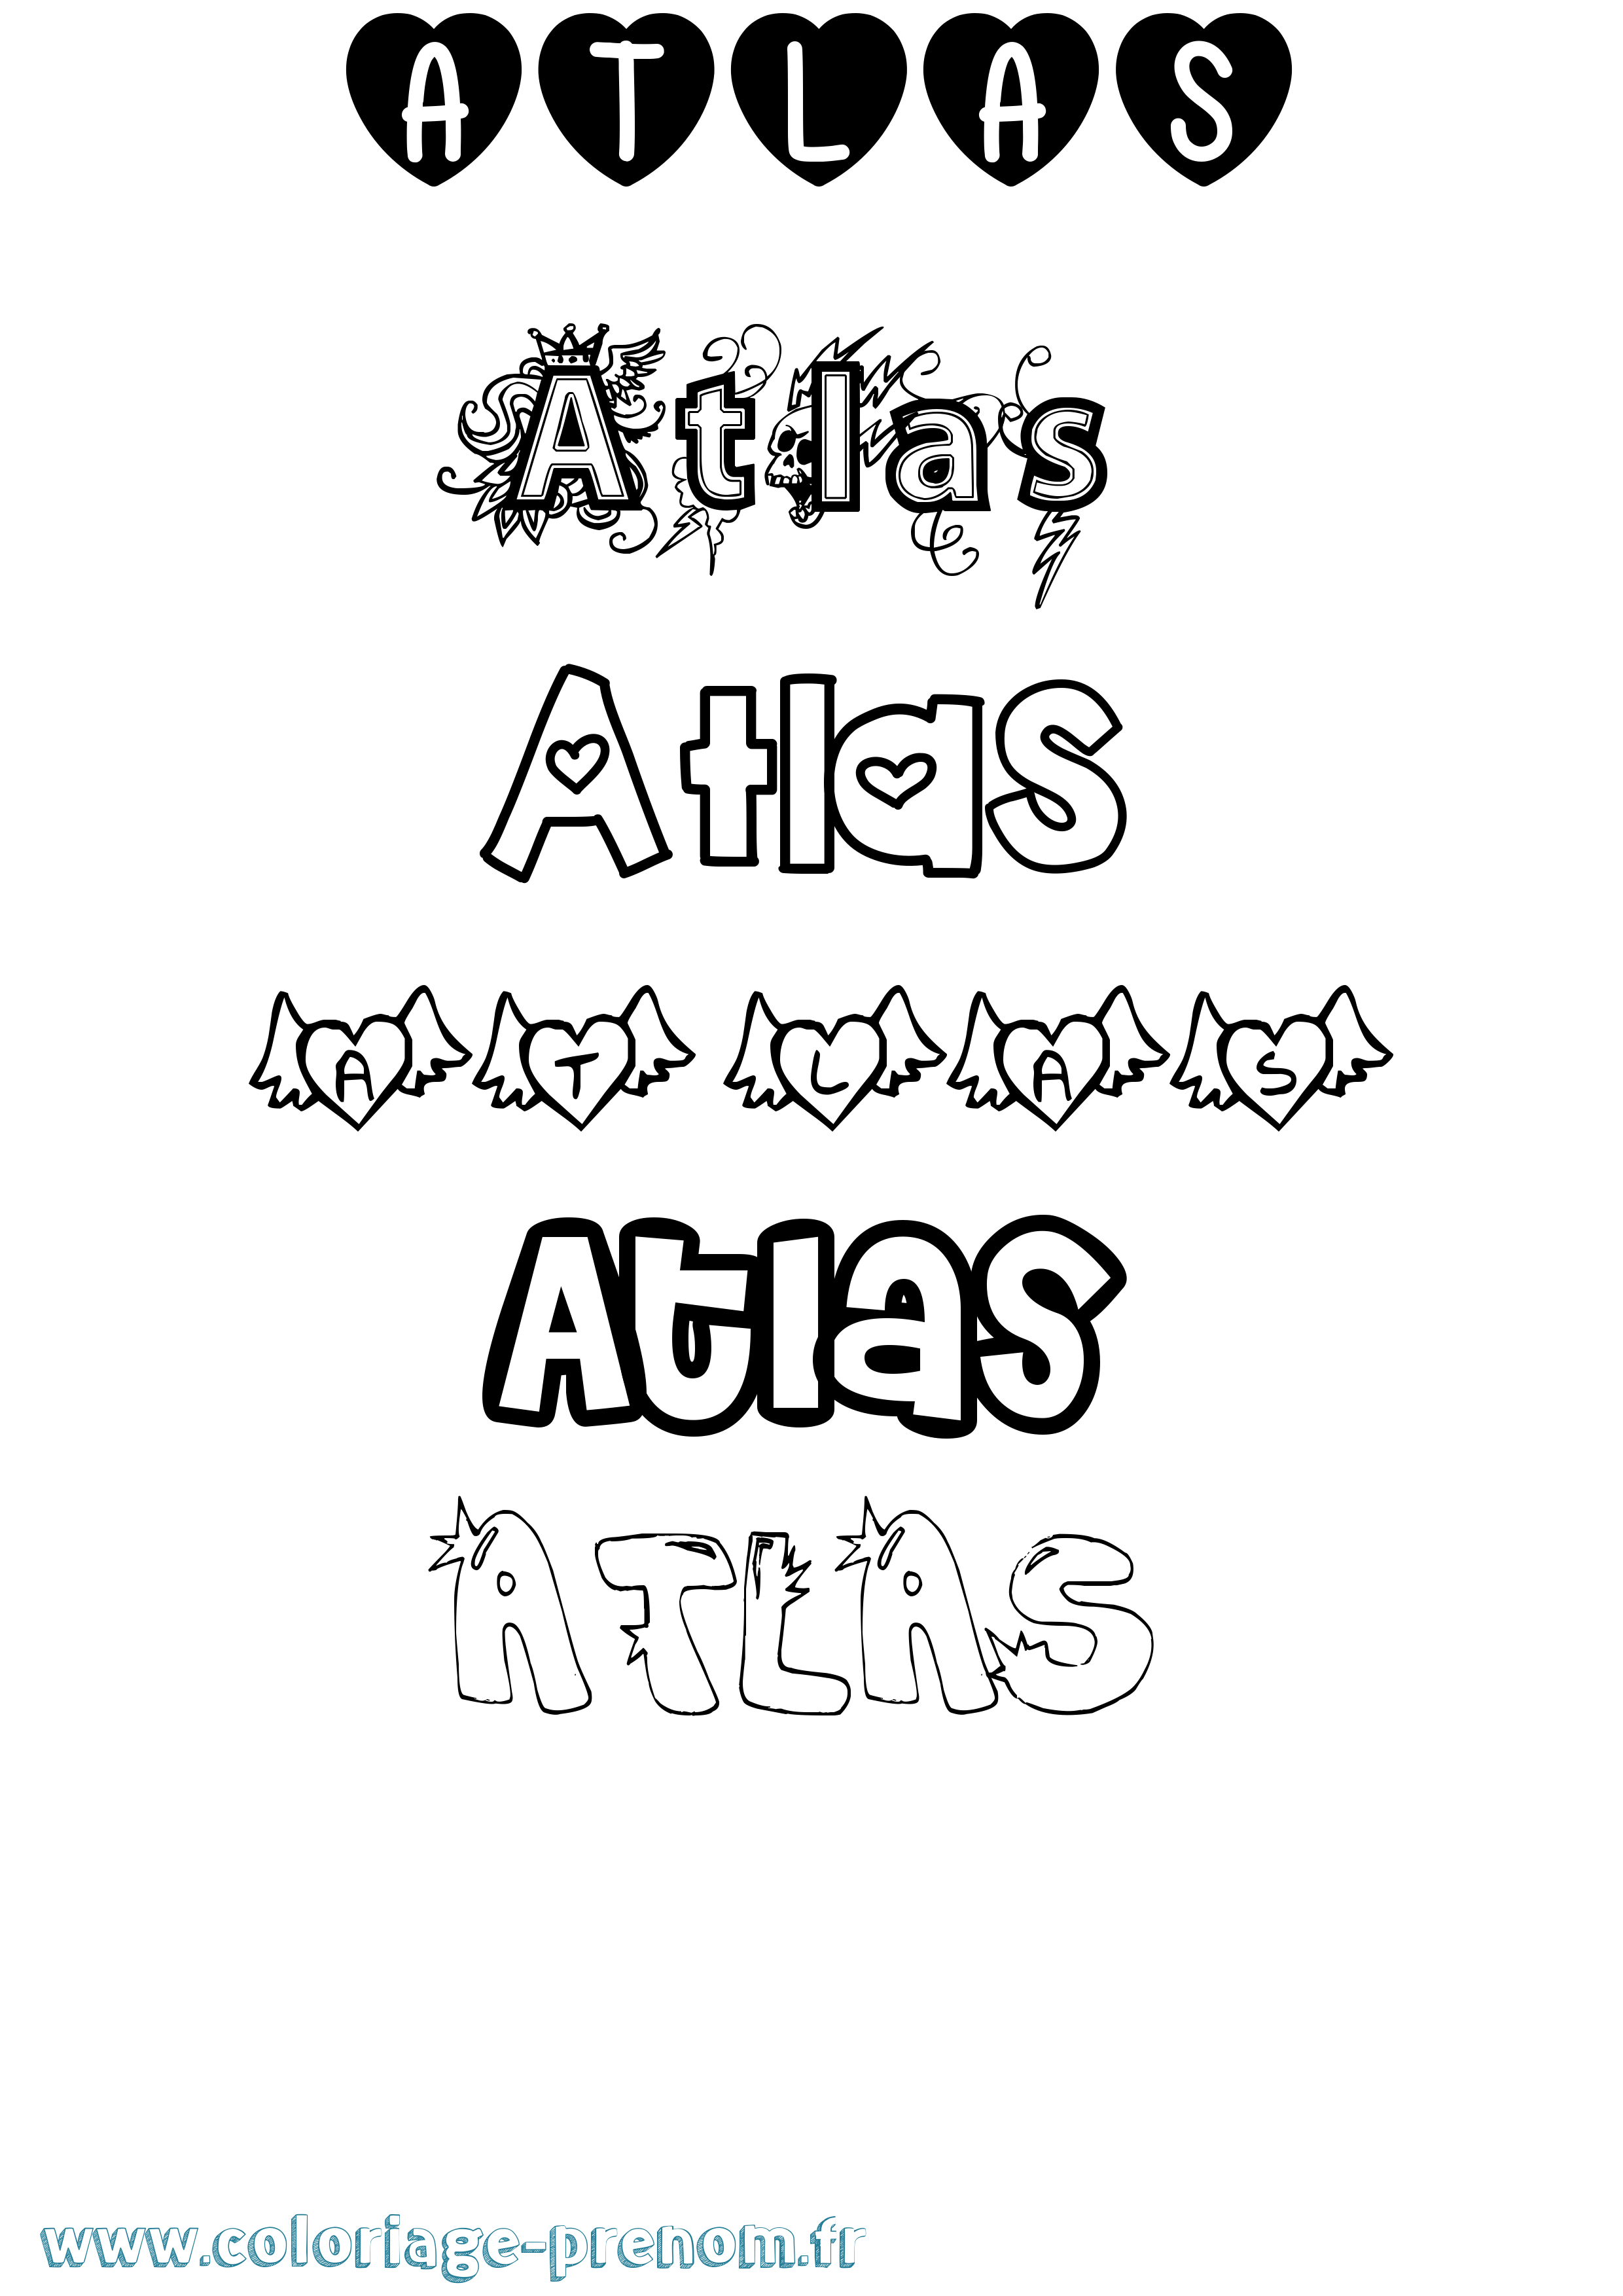 Coloriage prénom Atlas Girly